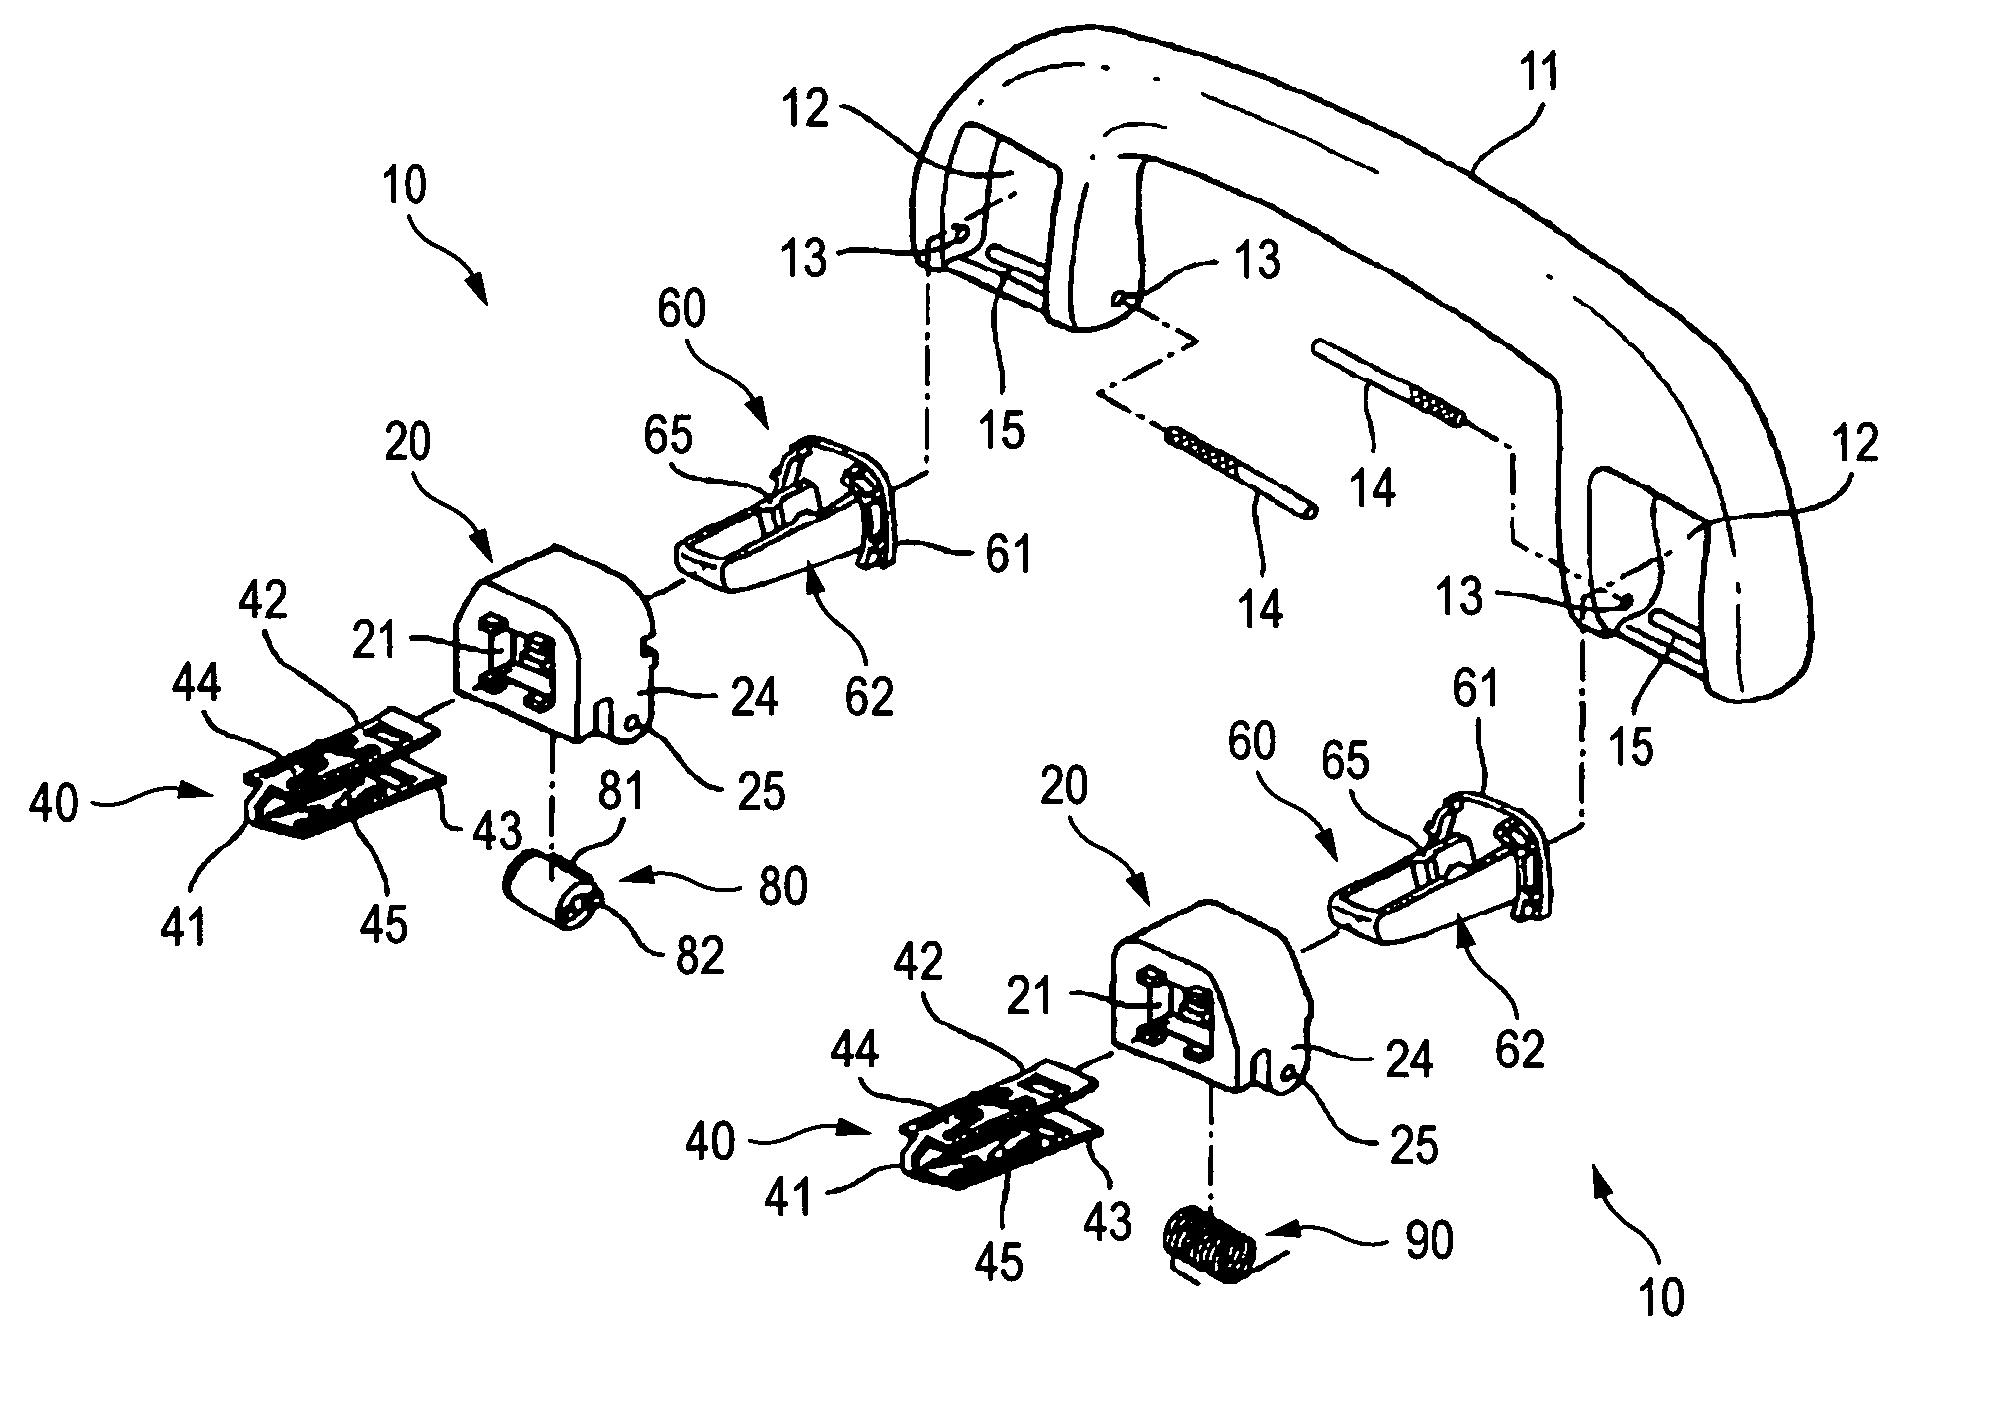 Apparatus of attaching interior part of automobile